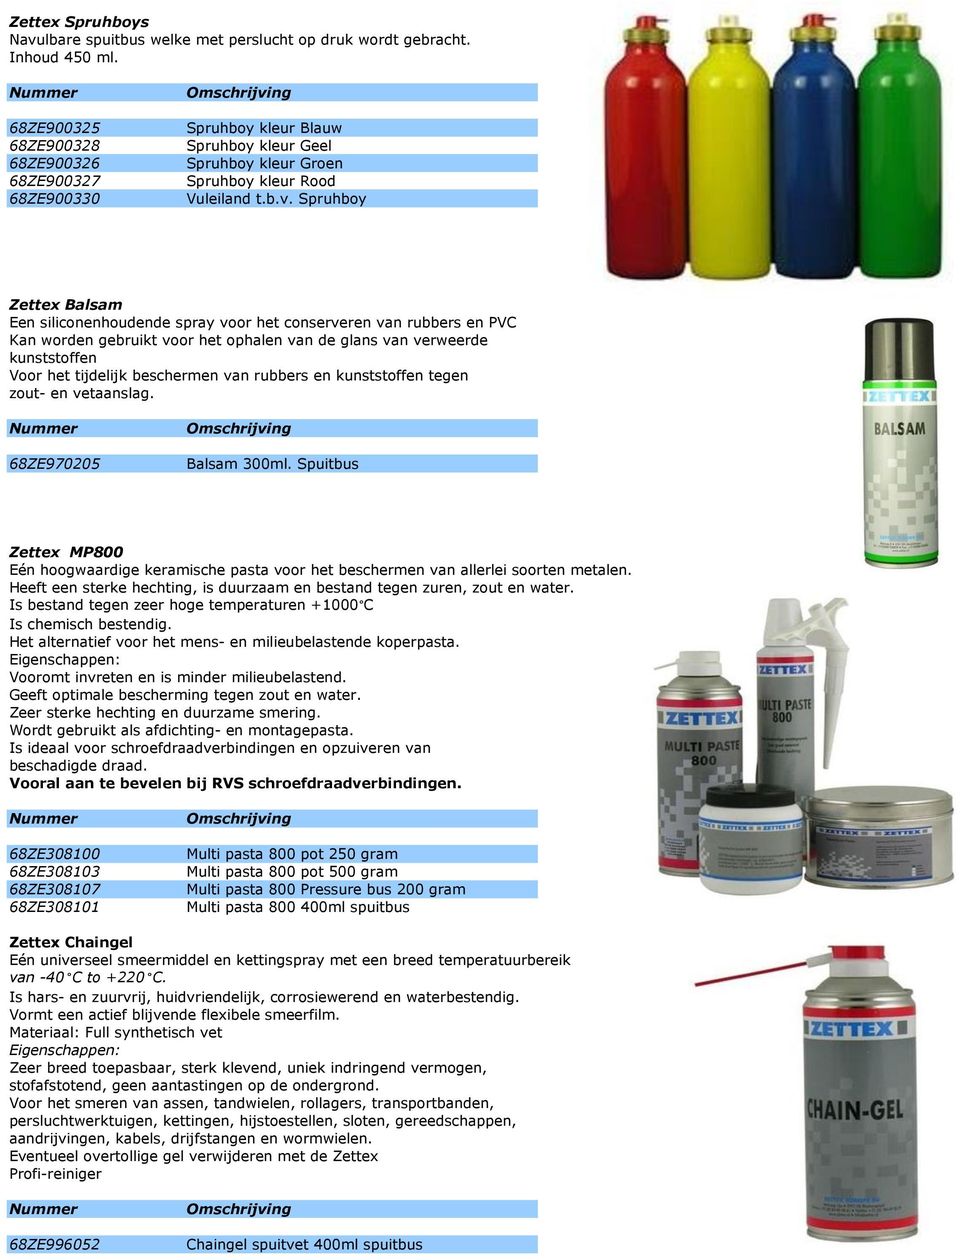 Spruhboy Zettex Balsam Een siliconenhoudende spray voor het conserveren van rubbers en PVC Kan worden gebruikt voor het ophalen van de glans van verweerde kunststoffen Voor het tijdelijk beschermen